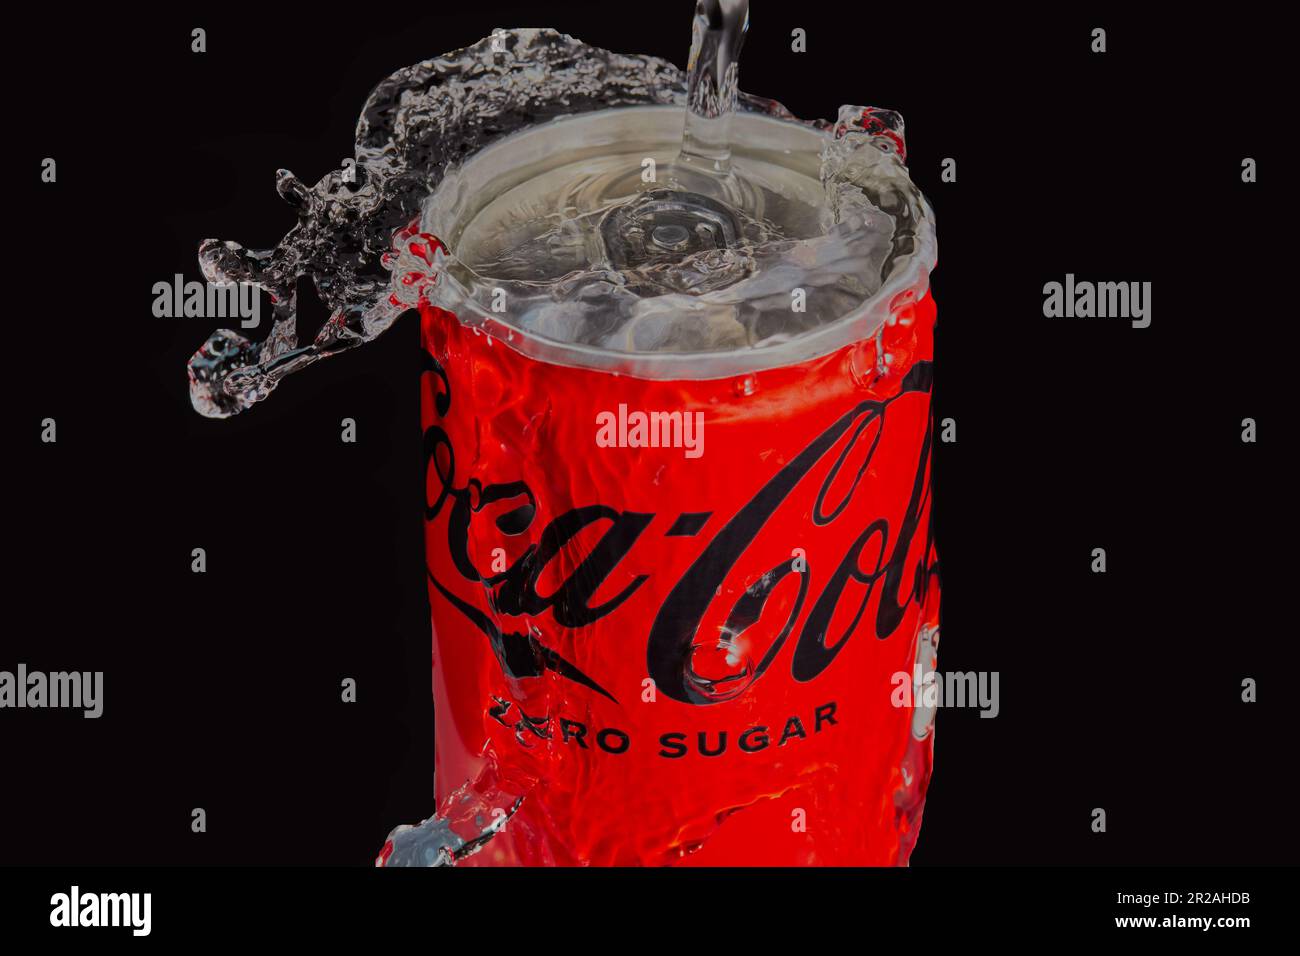 Lattina di Coca-Cola con acqua che viene spruzzata su di esso con uno sfondo scuro. Immagine del prodotto in studio Mansfield,Nottingham,Regno Unito. Foto Stock